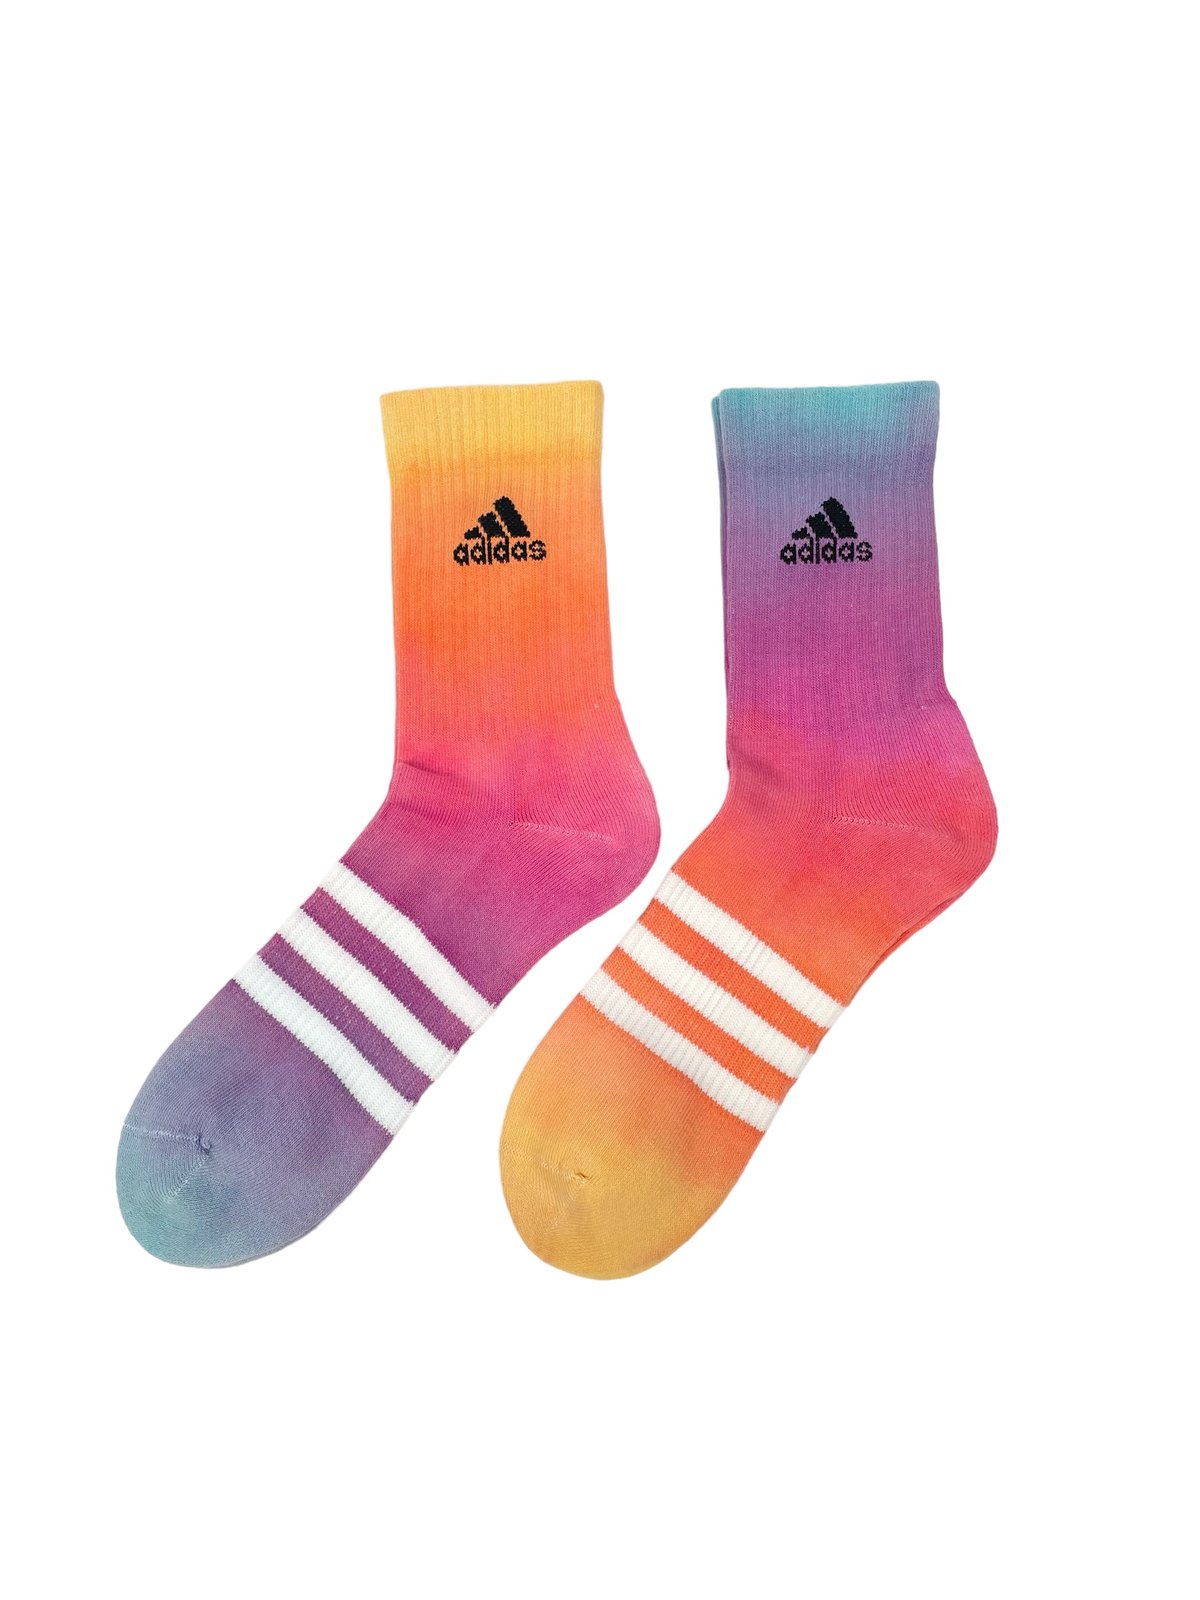 Image of Adidas Socks Dyed Sunset Pack